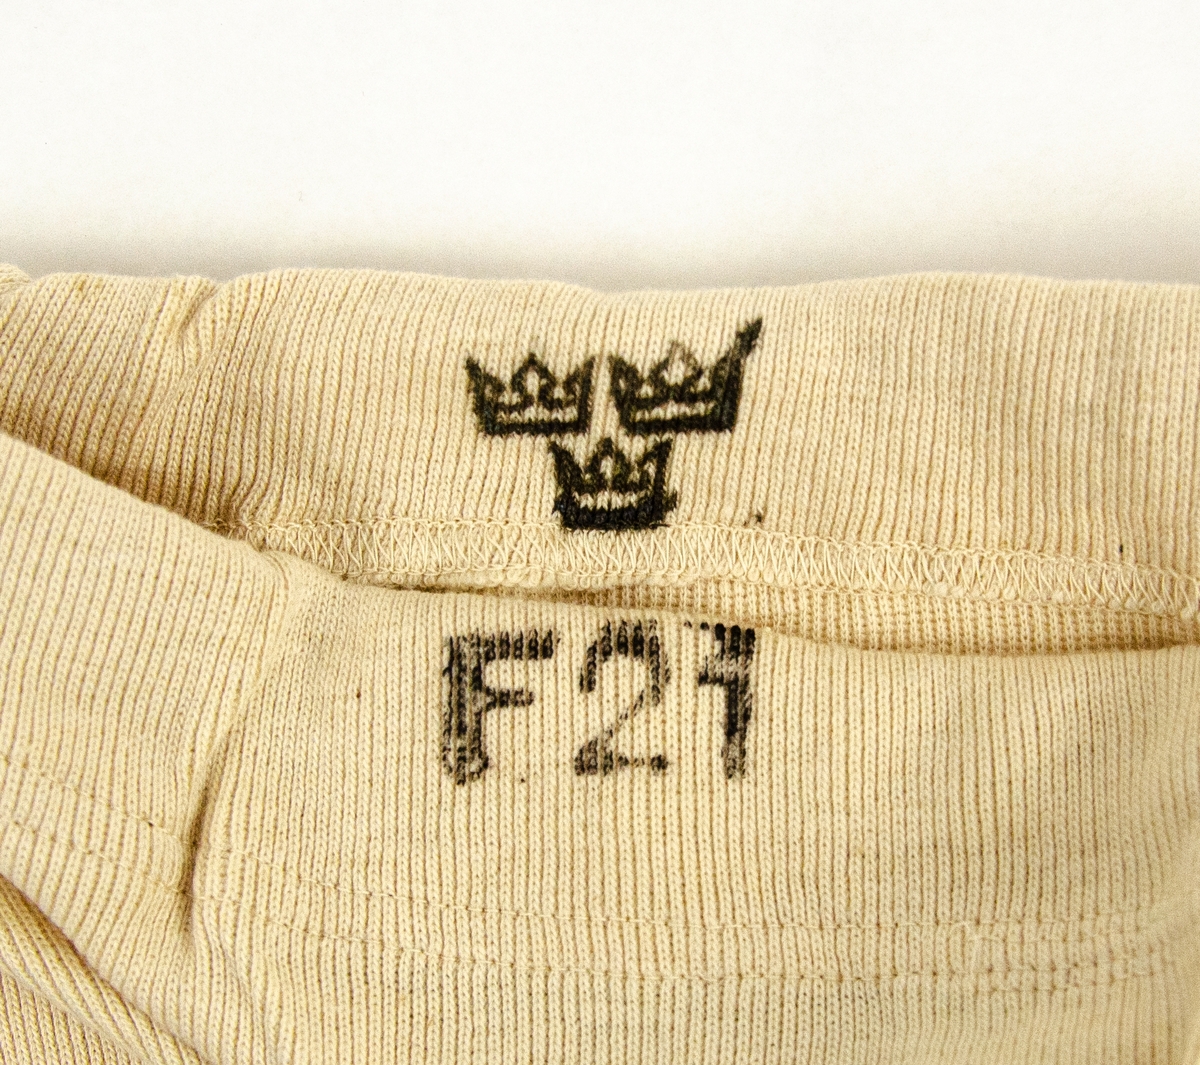 Underställsbyxa utförd i oblekt bomullstrikå. På insidan av byxlinningen finns maskingjord etikett "storl 5.", samt stämplat motiv i svart bläck iform av tre kronor. På byxlinningens utsida finns i svart bläck stämplat "F21".